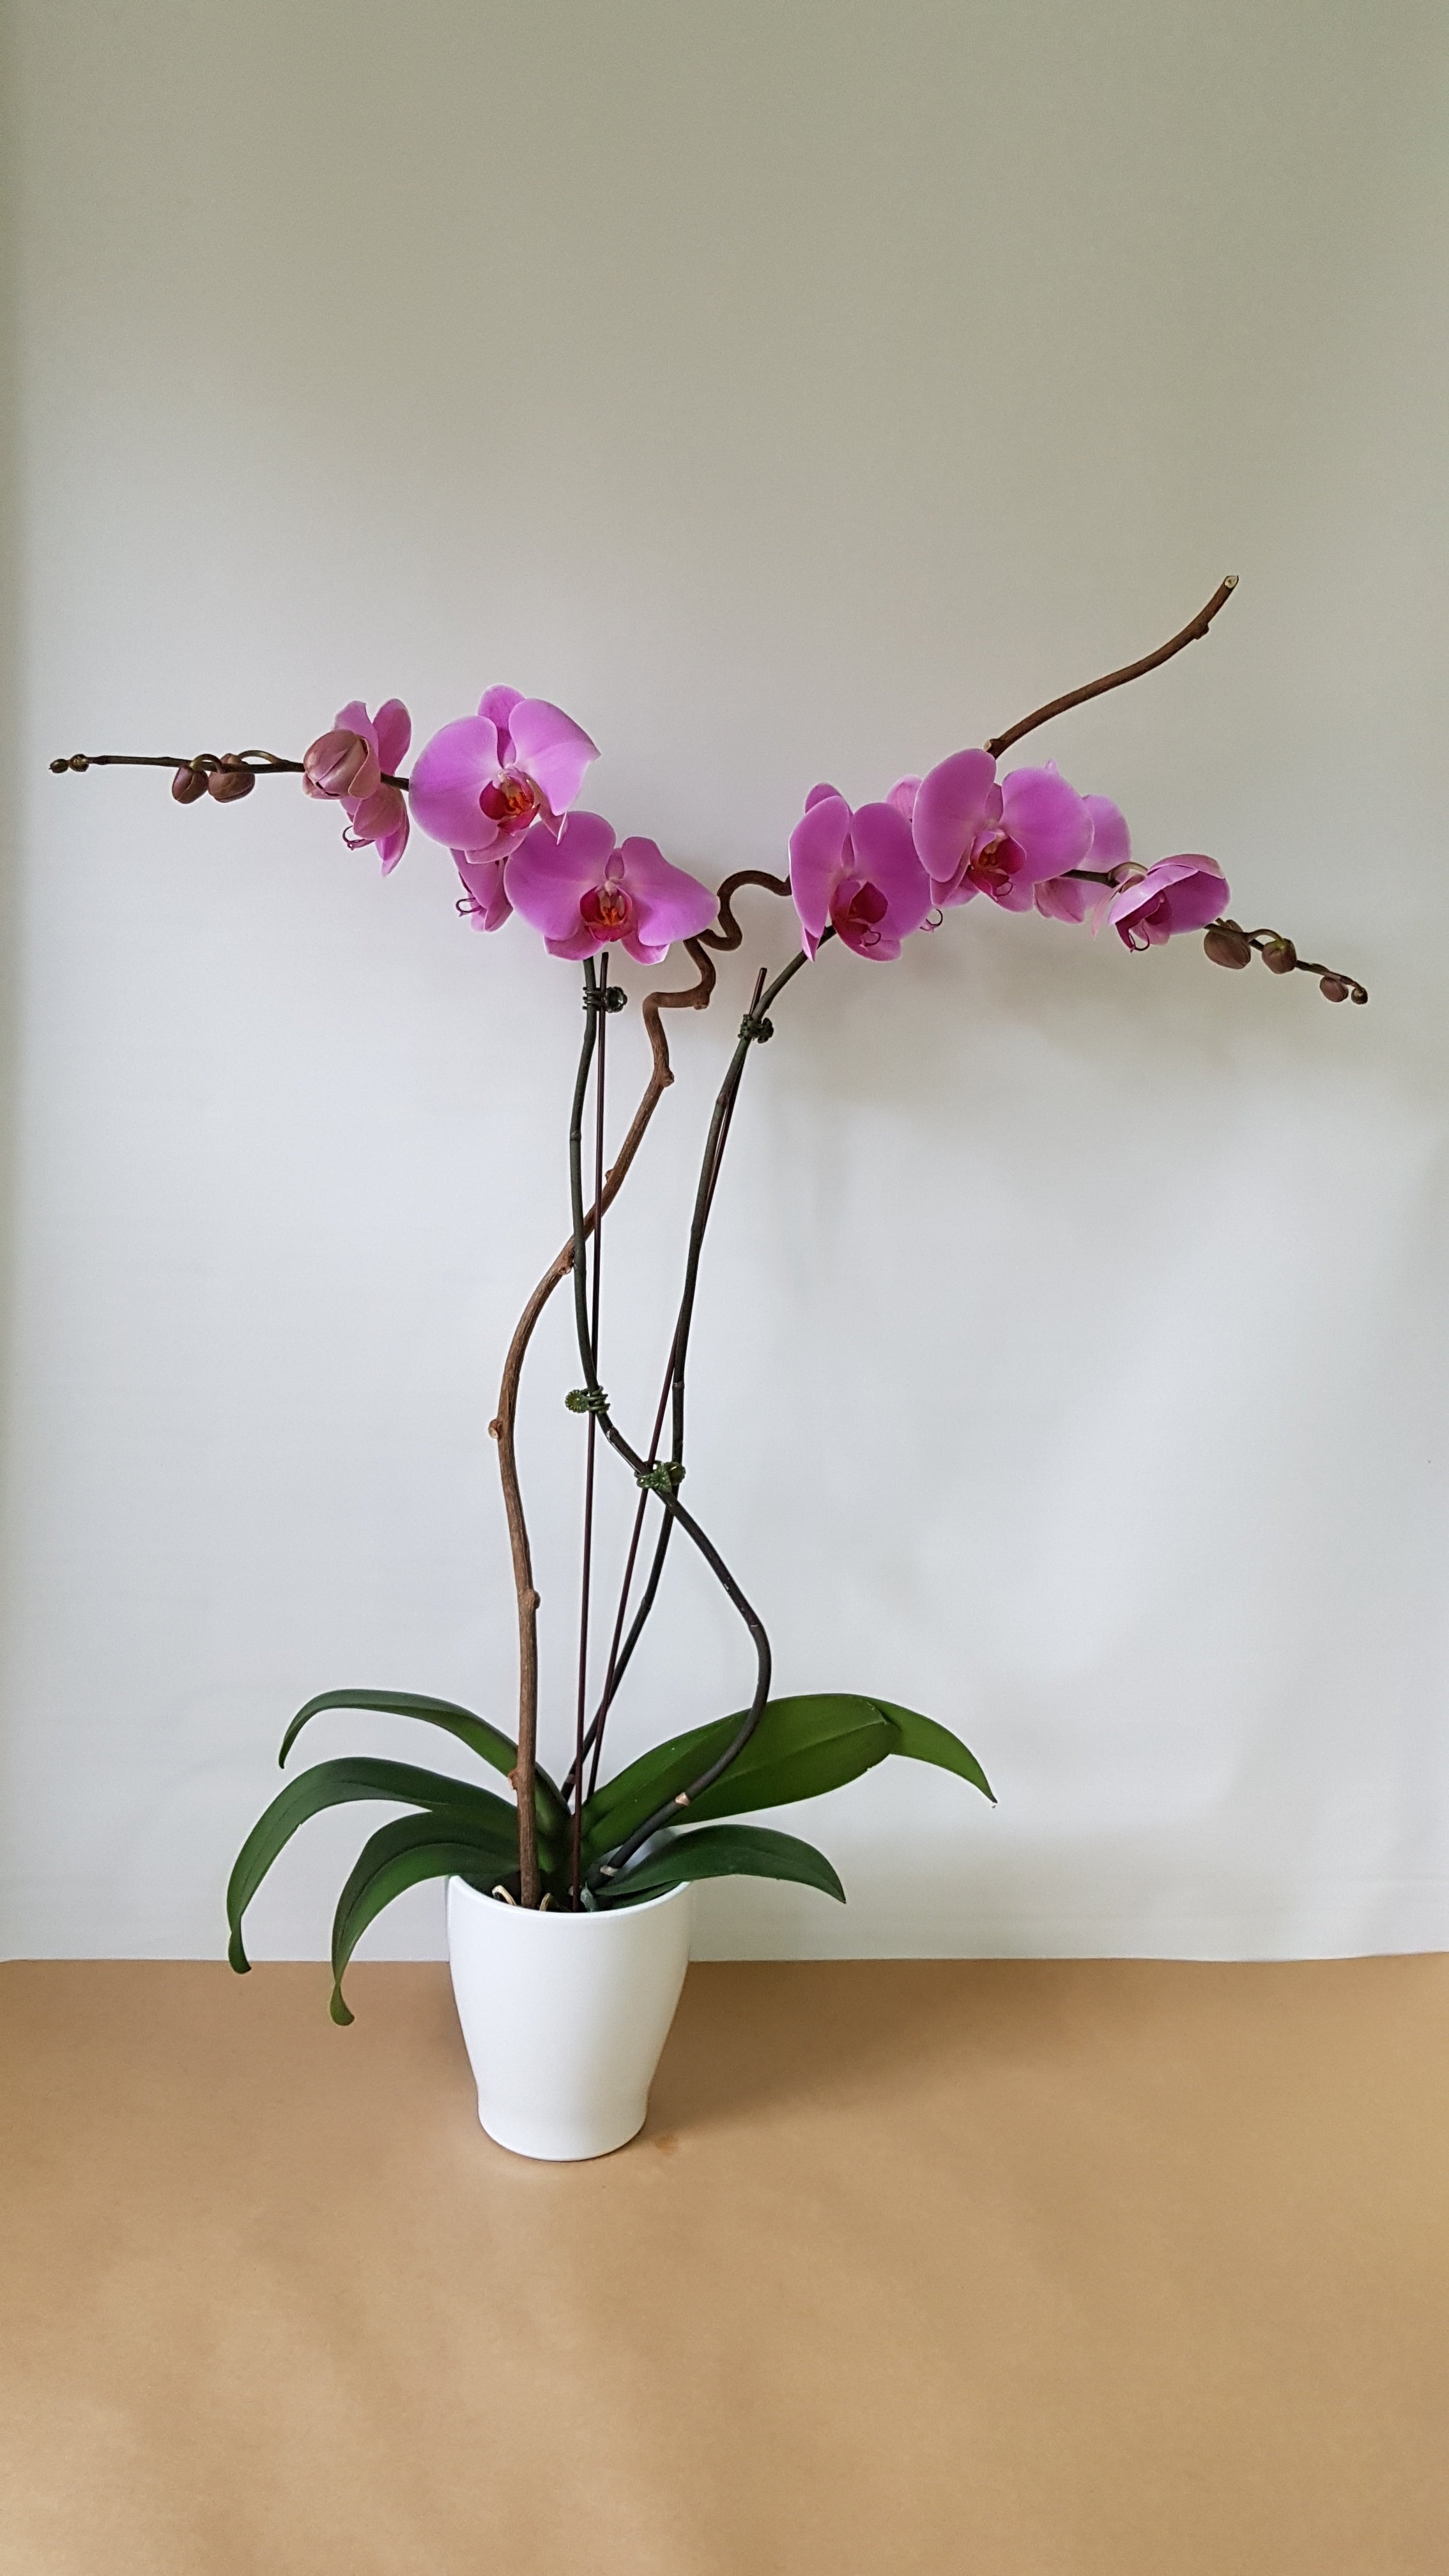 Double pink orchids - Immanuel Florist